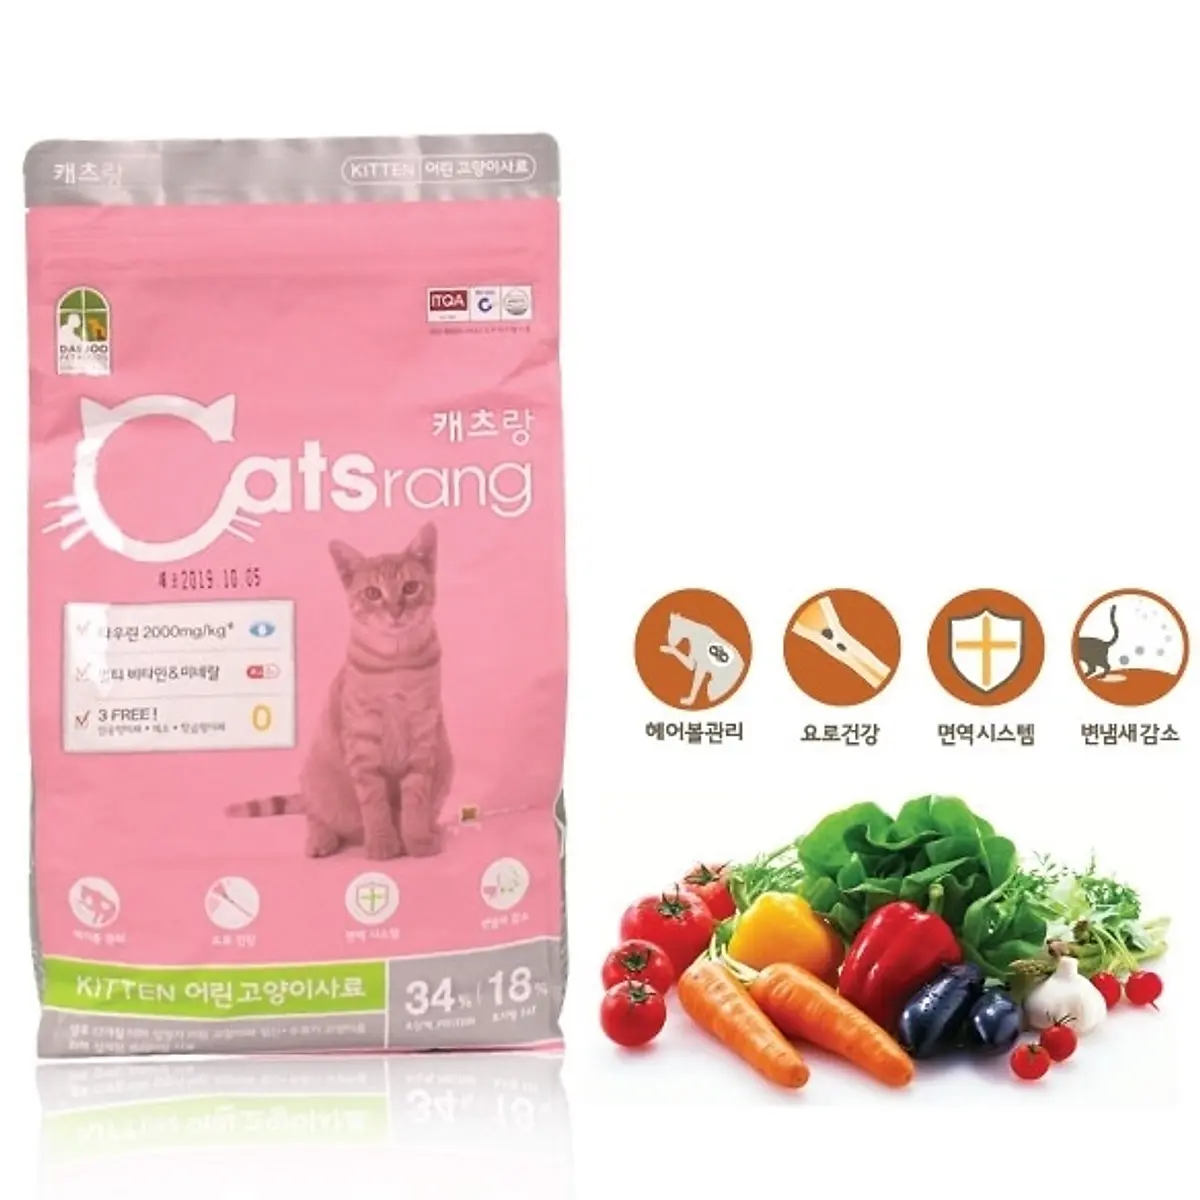 Catsrang Seed Food cung cấp dinh dưỡng cho mèo con với giá không đắt